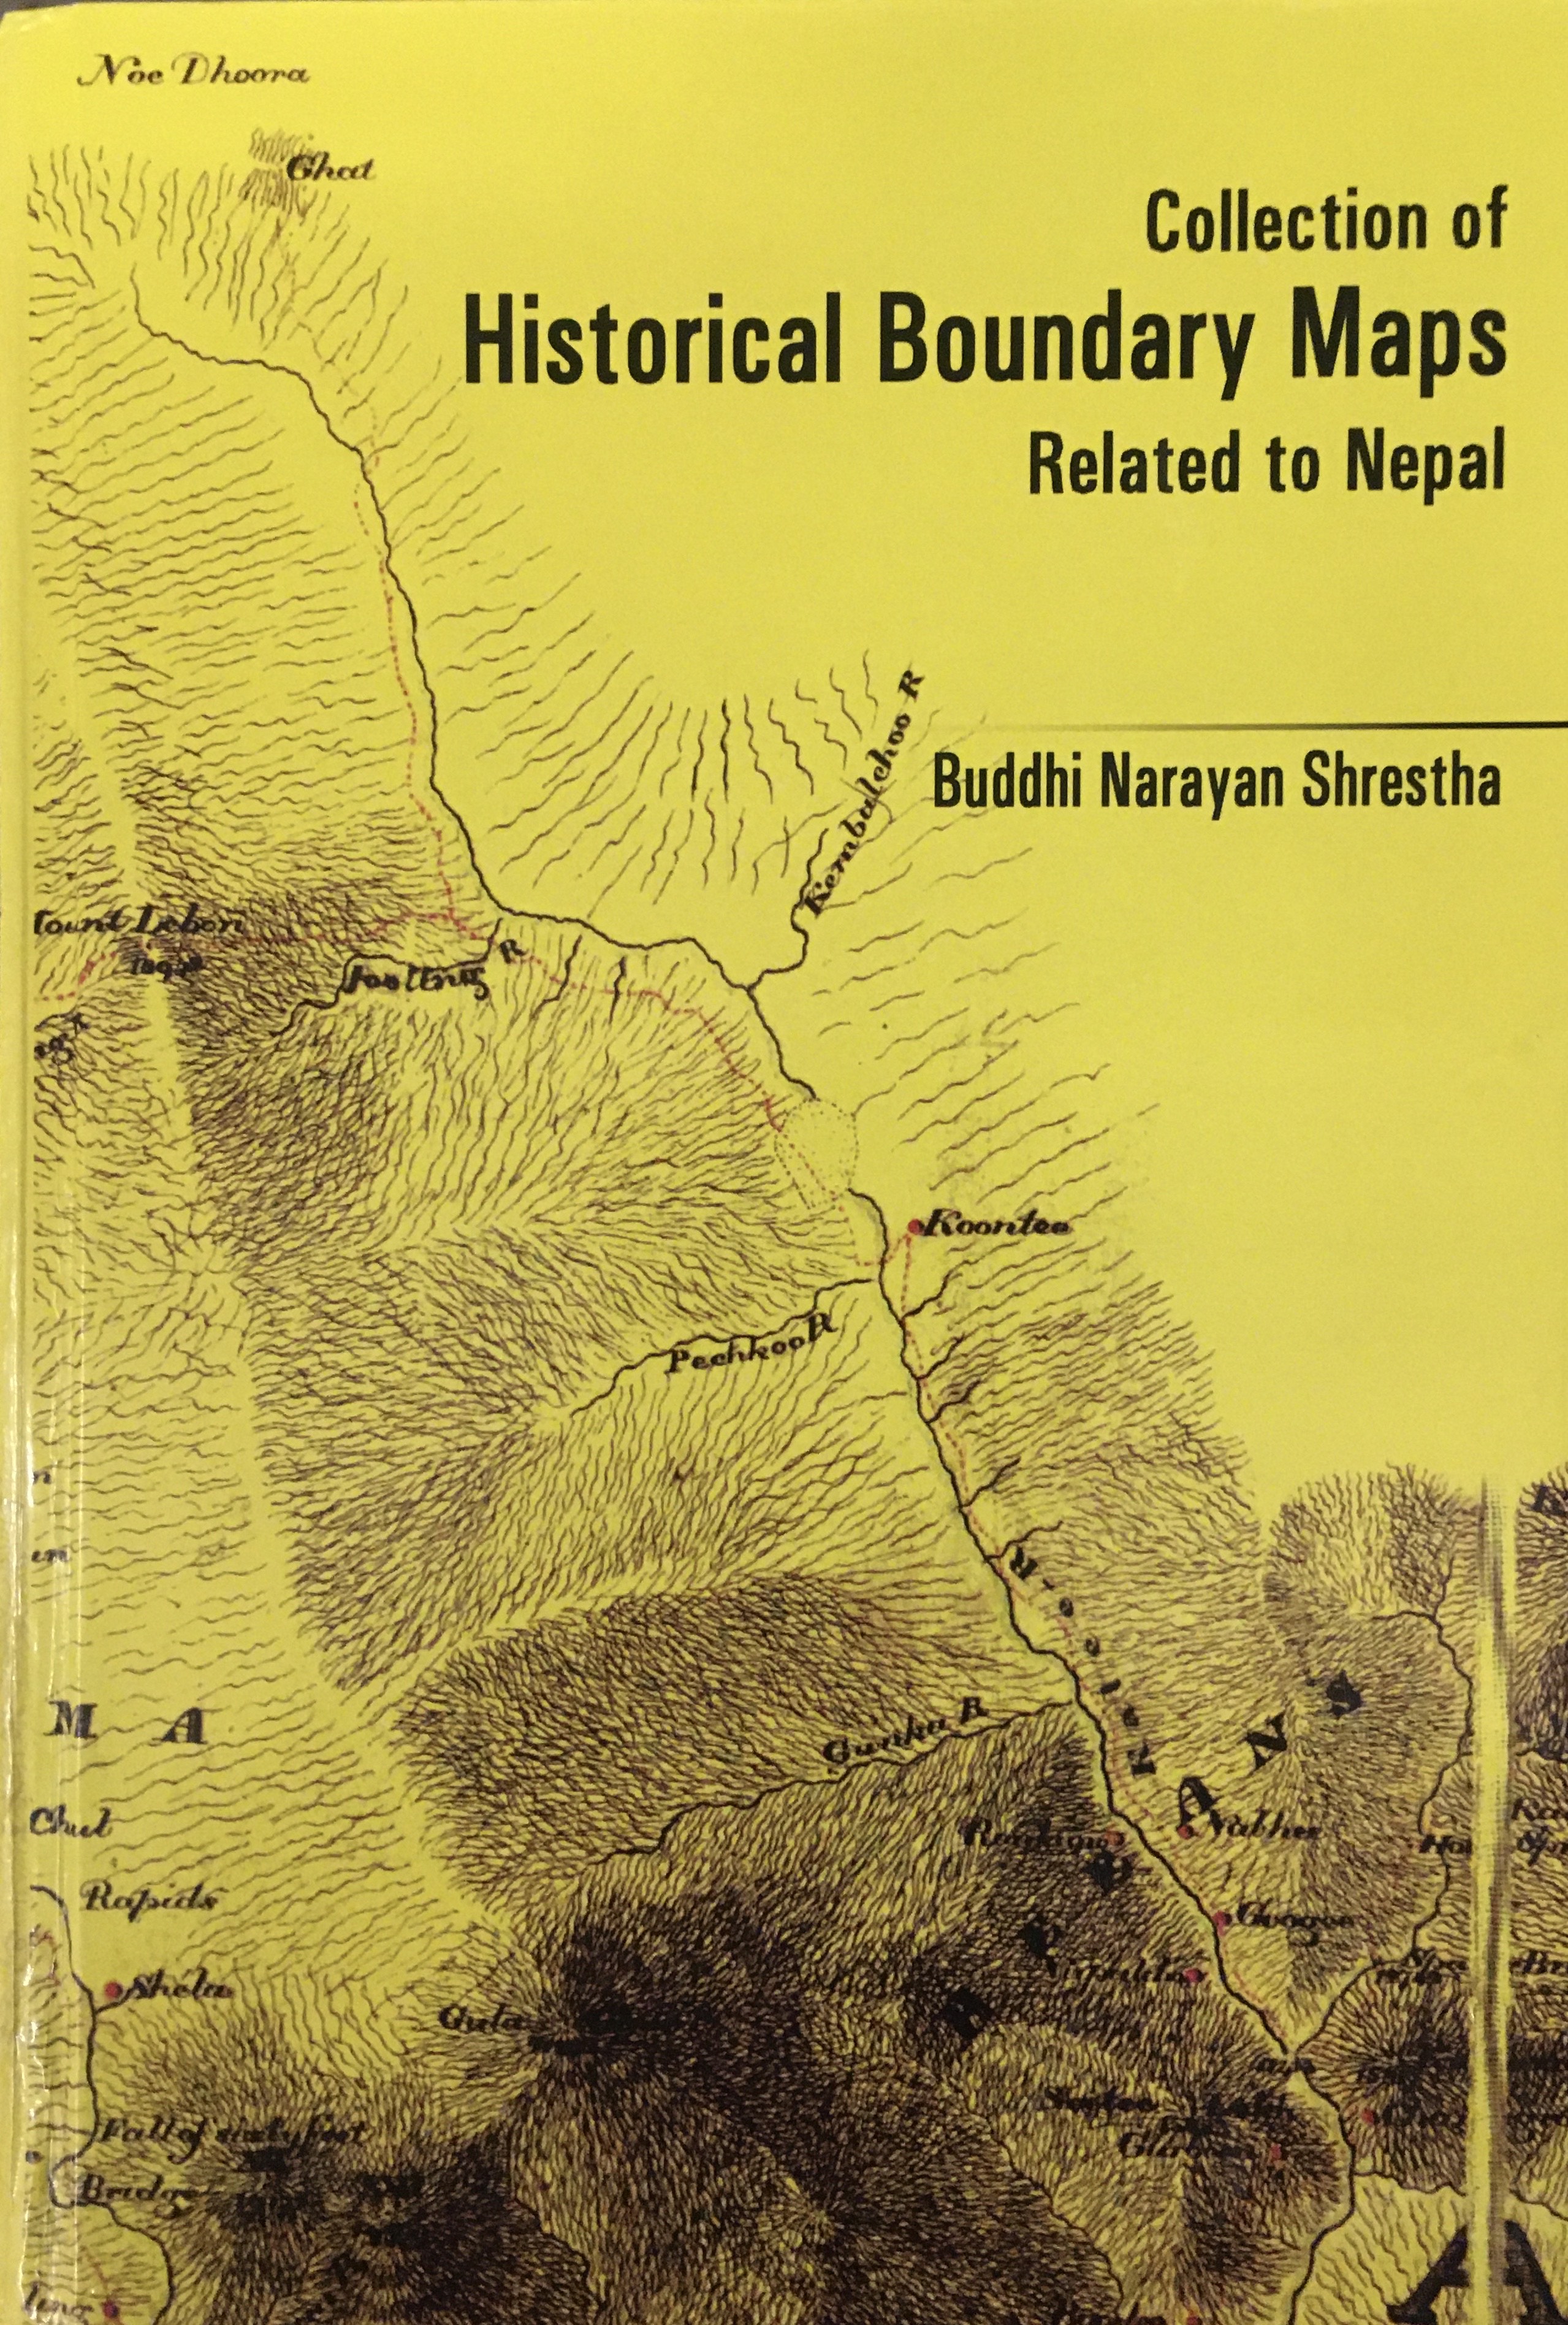 सीमाविद् श्रेष्ठको ‘हिस्टोरिकल बाउन्ड्री म्याप्स अफ नेपाल’ पुस्तक सार्वजनिक